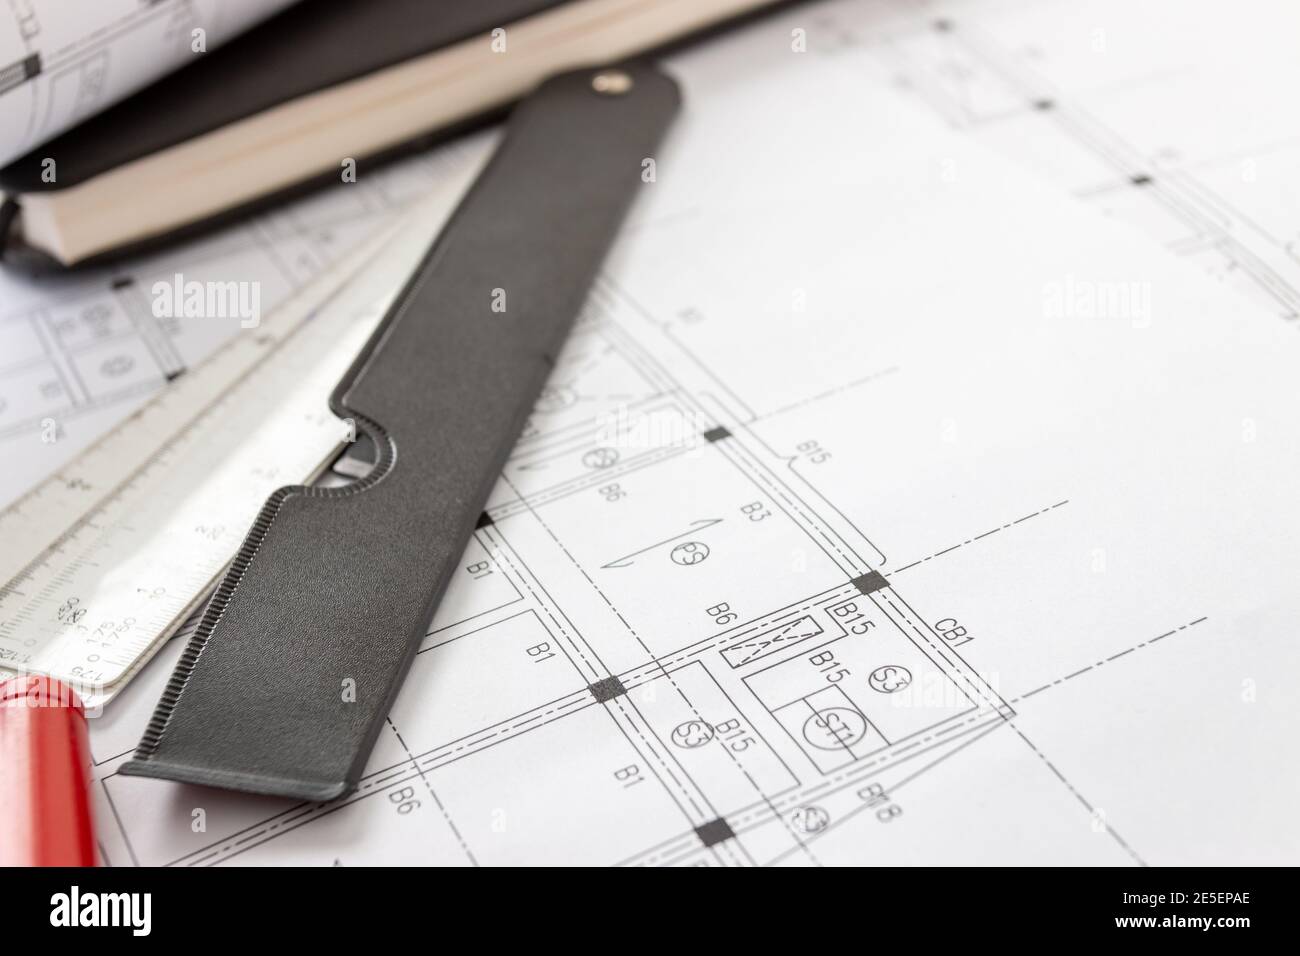 Rollen von Architekturentwürfen und Hausplänen auf dem Tisch und Architekten Zeichenwerkzeuge. Stockfoto